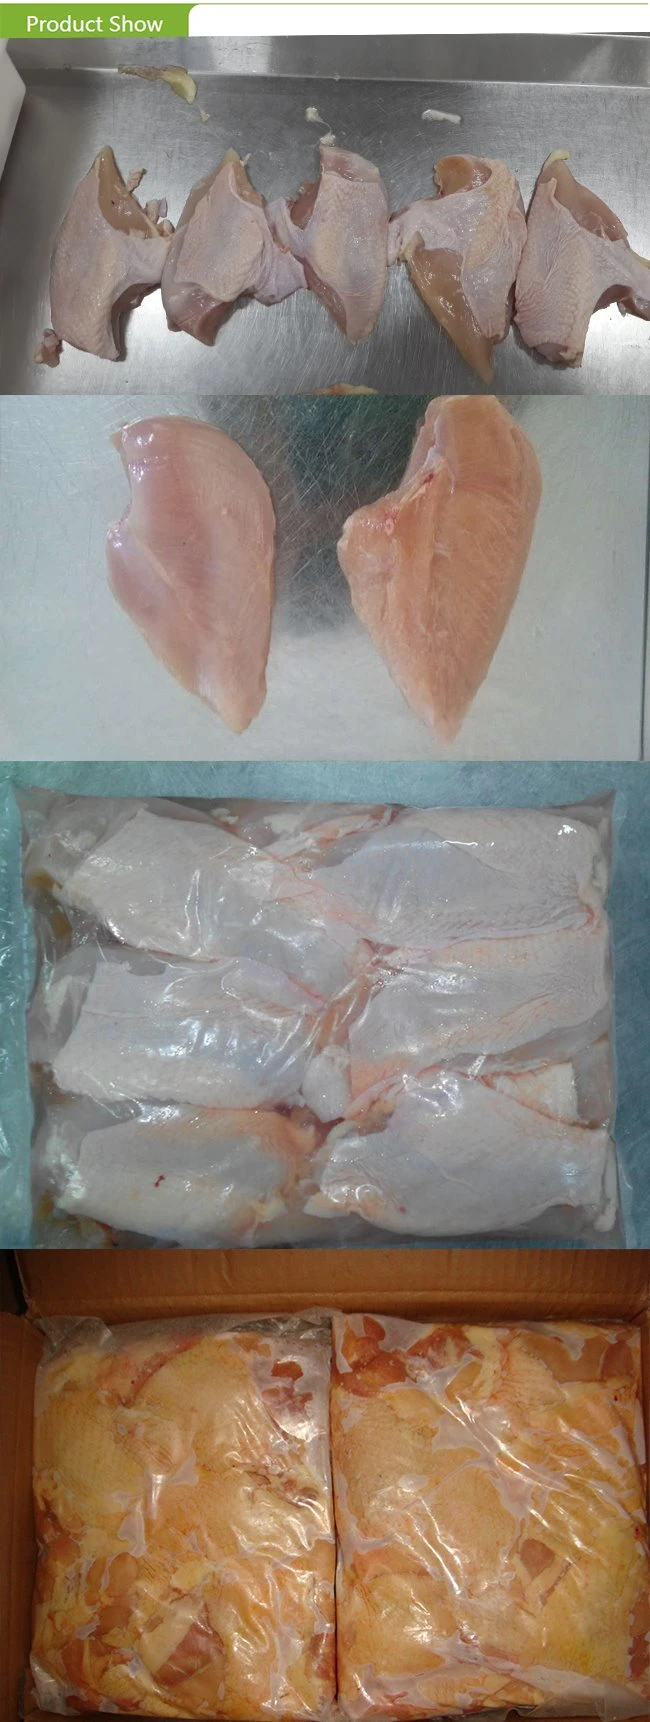 Frozen Halal Chicken Breast Fillets Skinelss